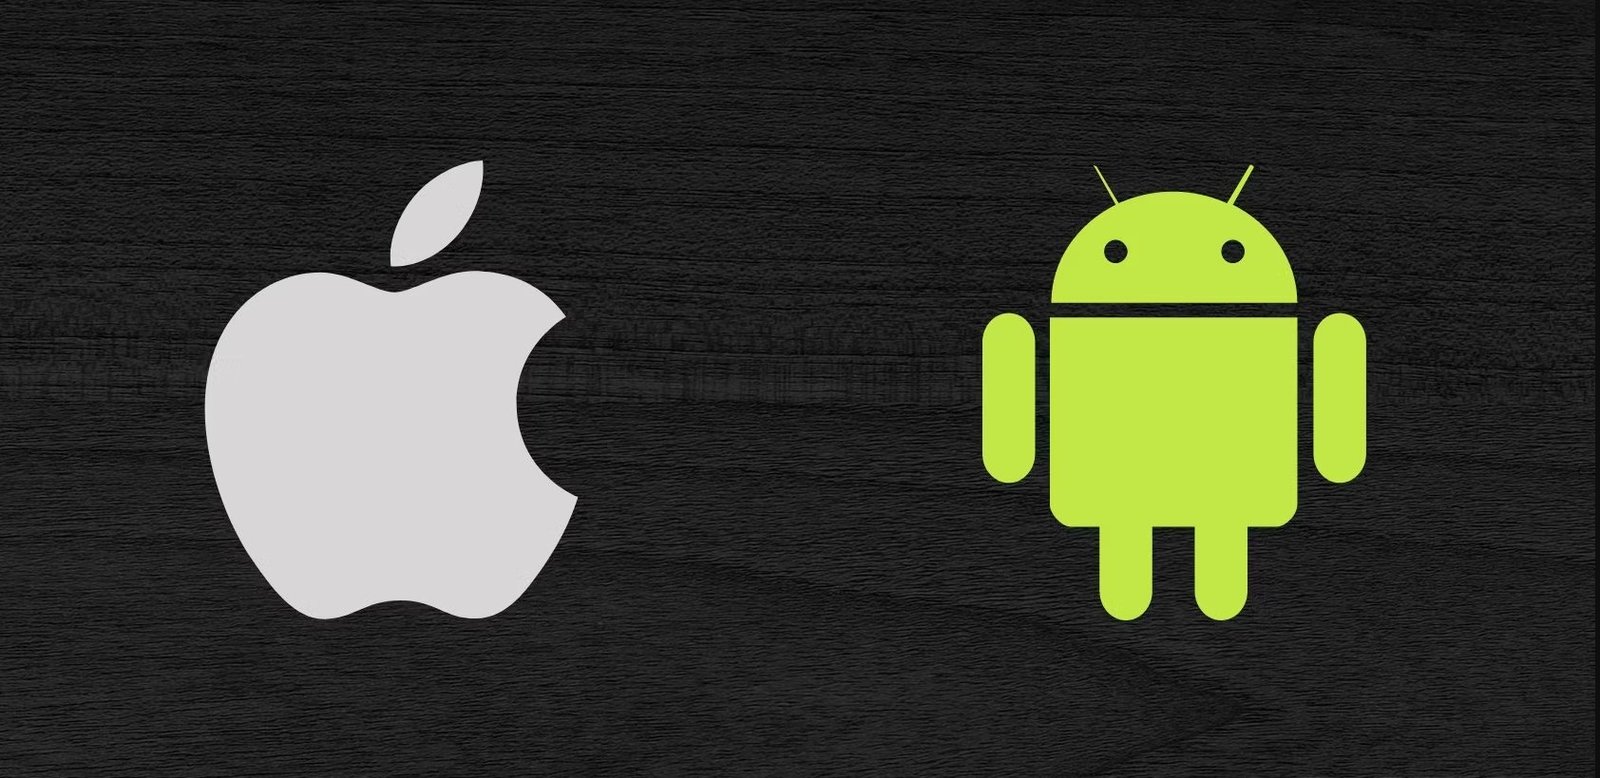 Android mi iOS mu: Mobil İşletim Sistemleri Karşılaştırması